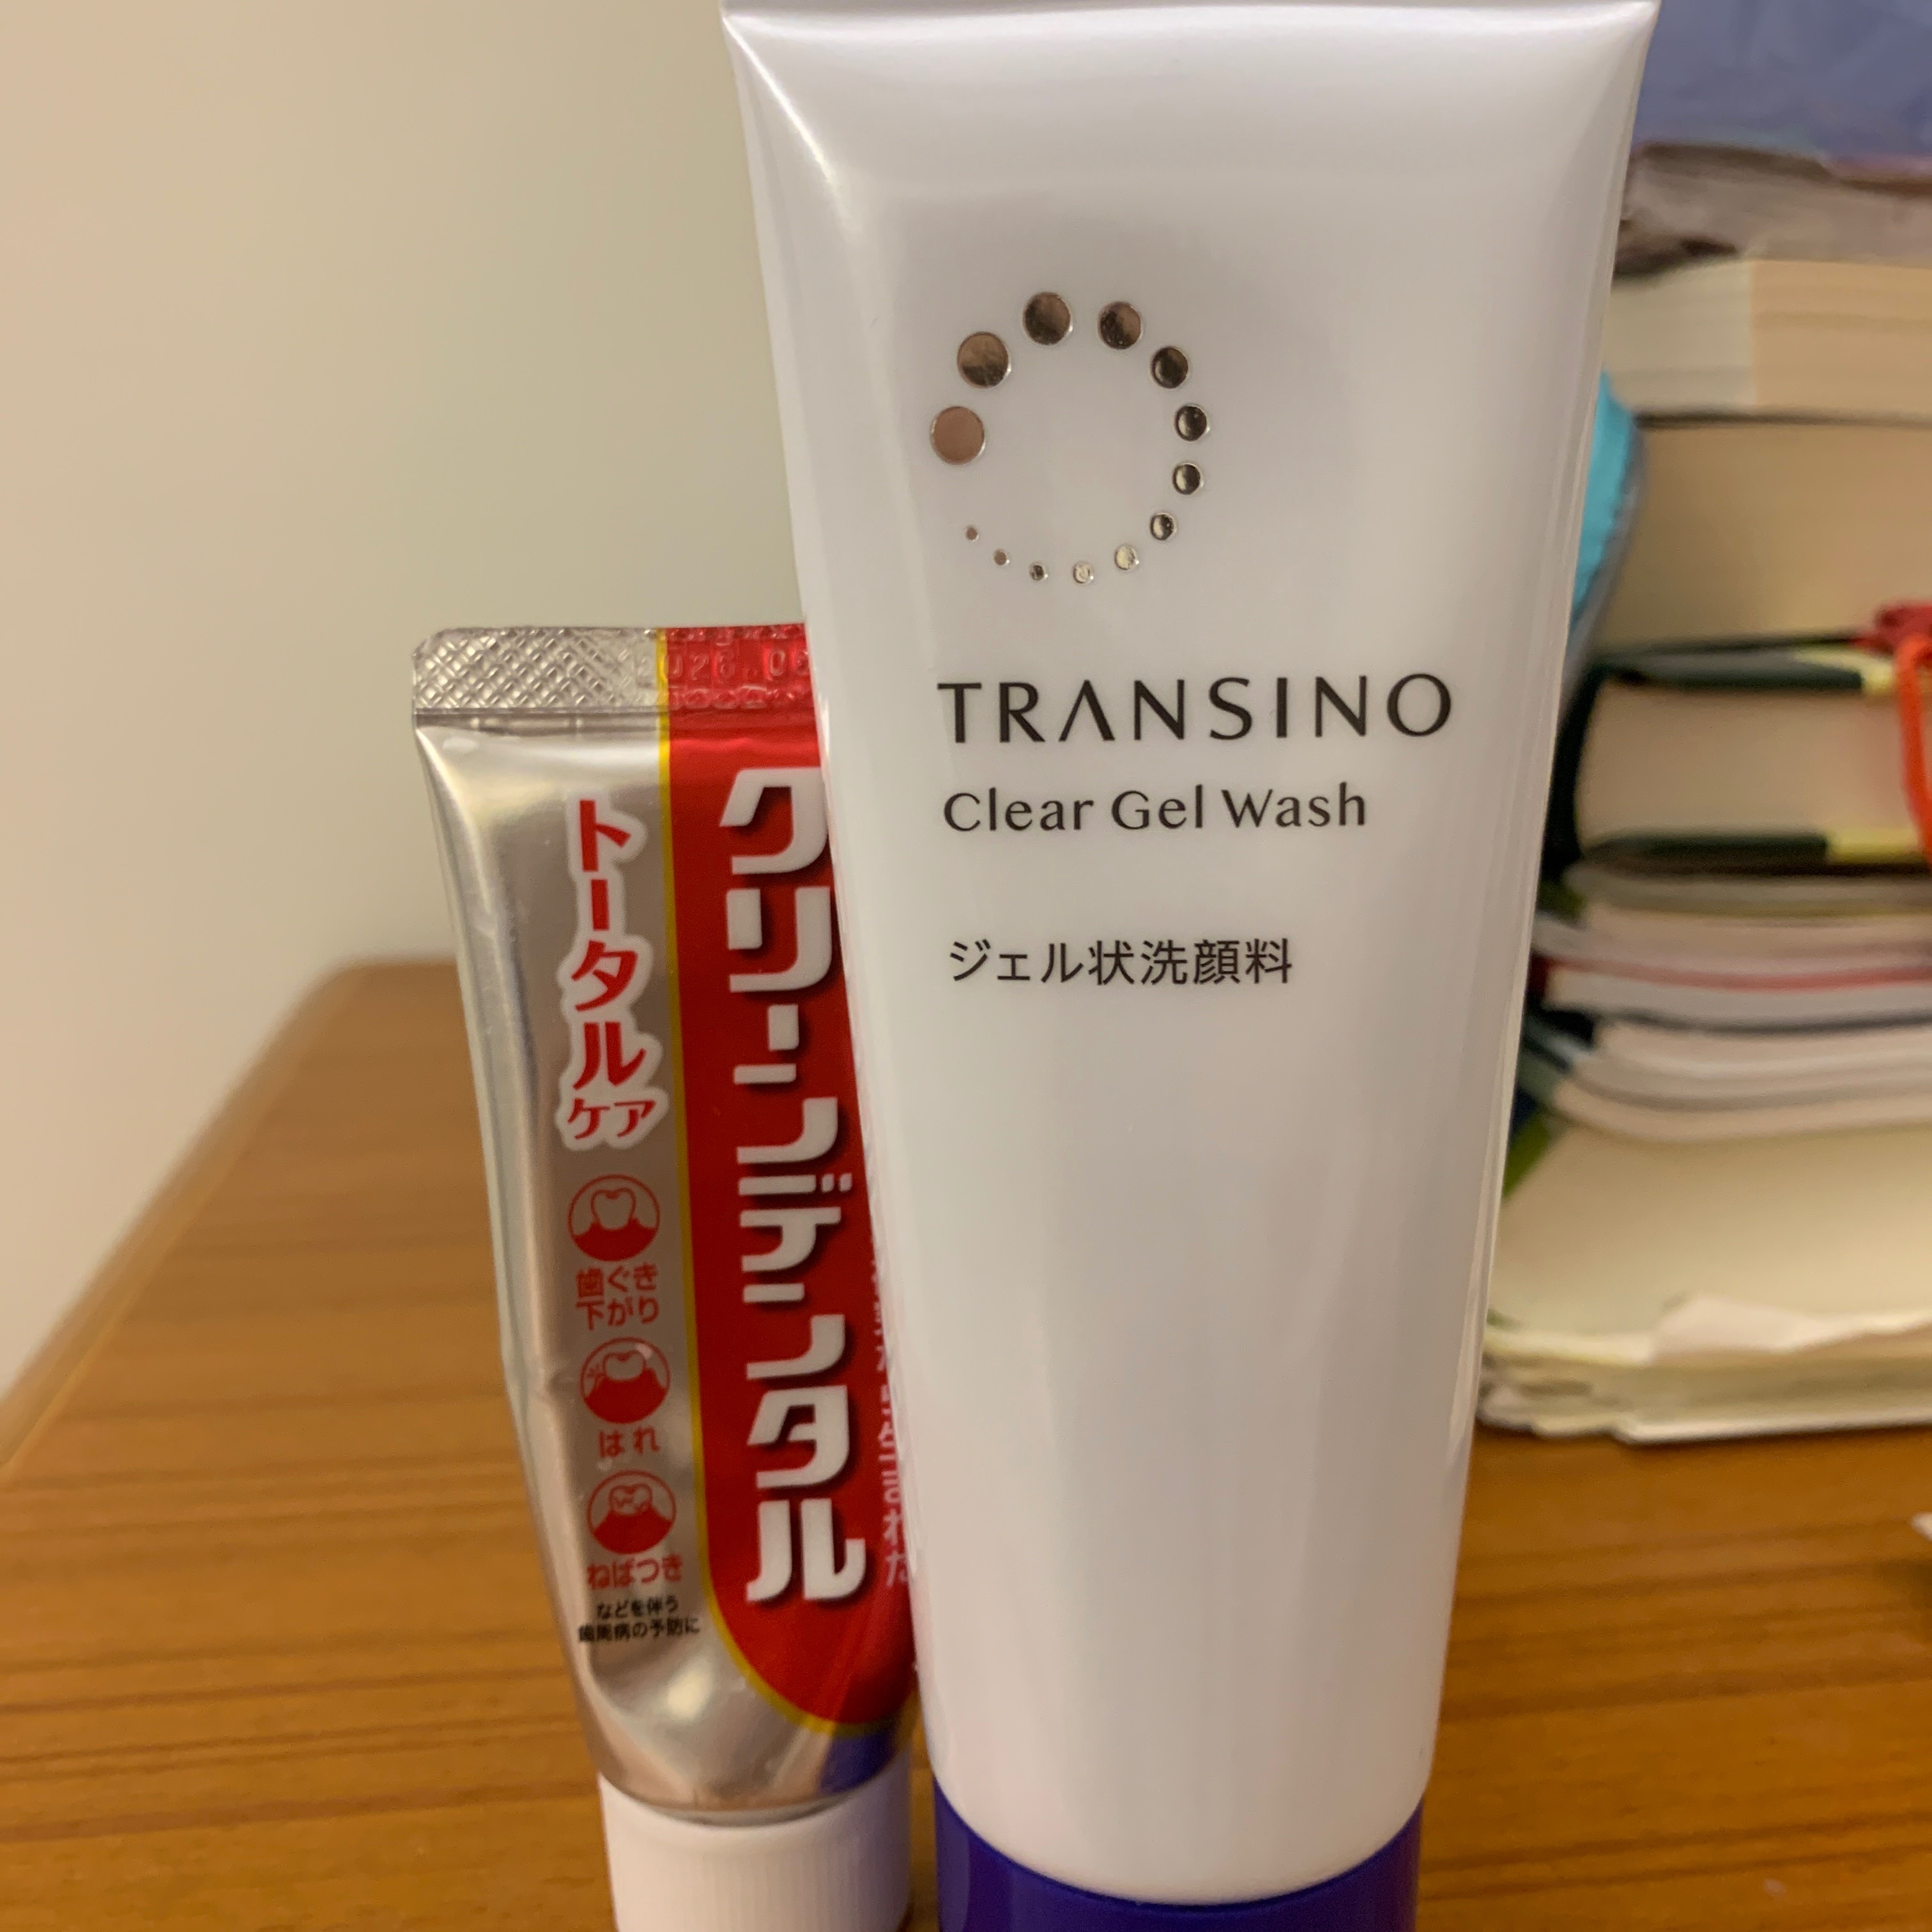 『第一三共 Clean dental 』日本回購率第一名的小紅管護理牙膏&TRANSINO淨亮毛孔卸妝洗面凝膠